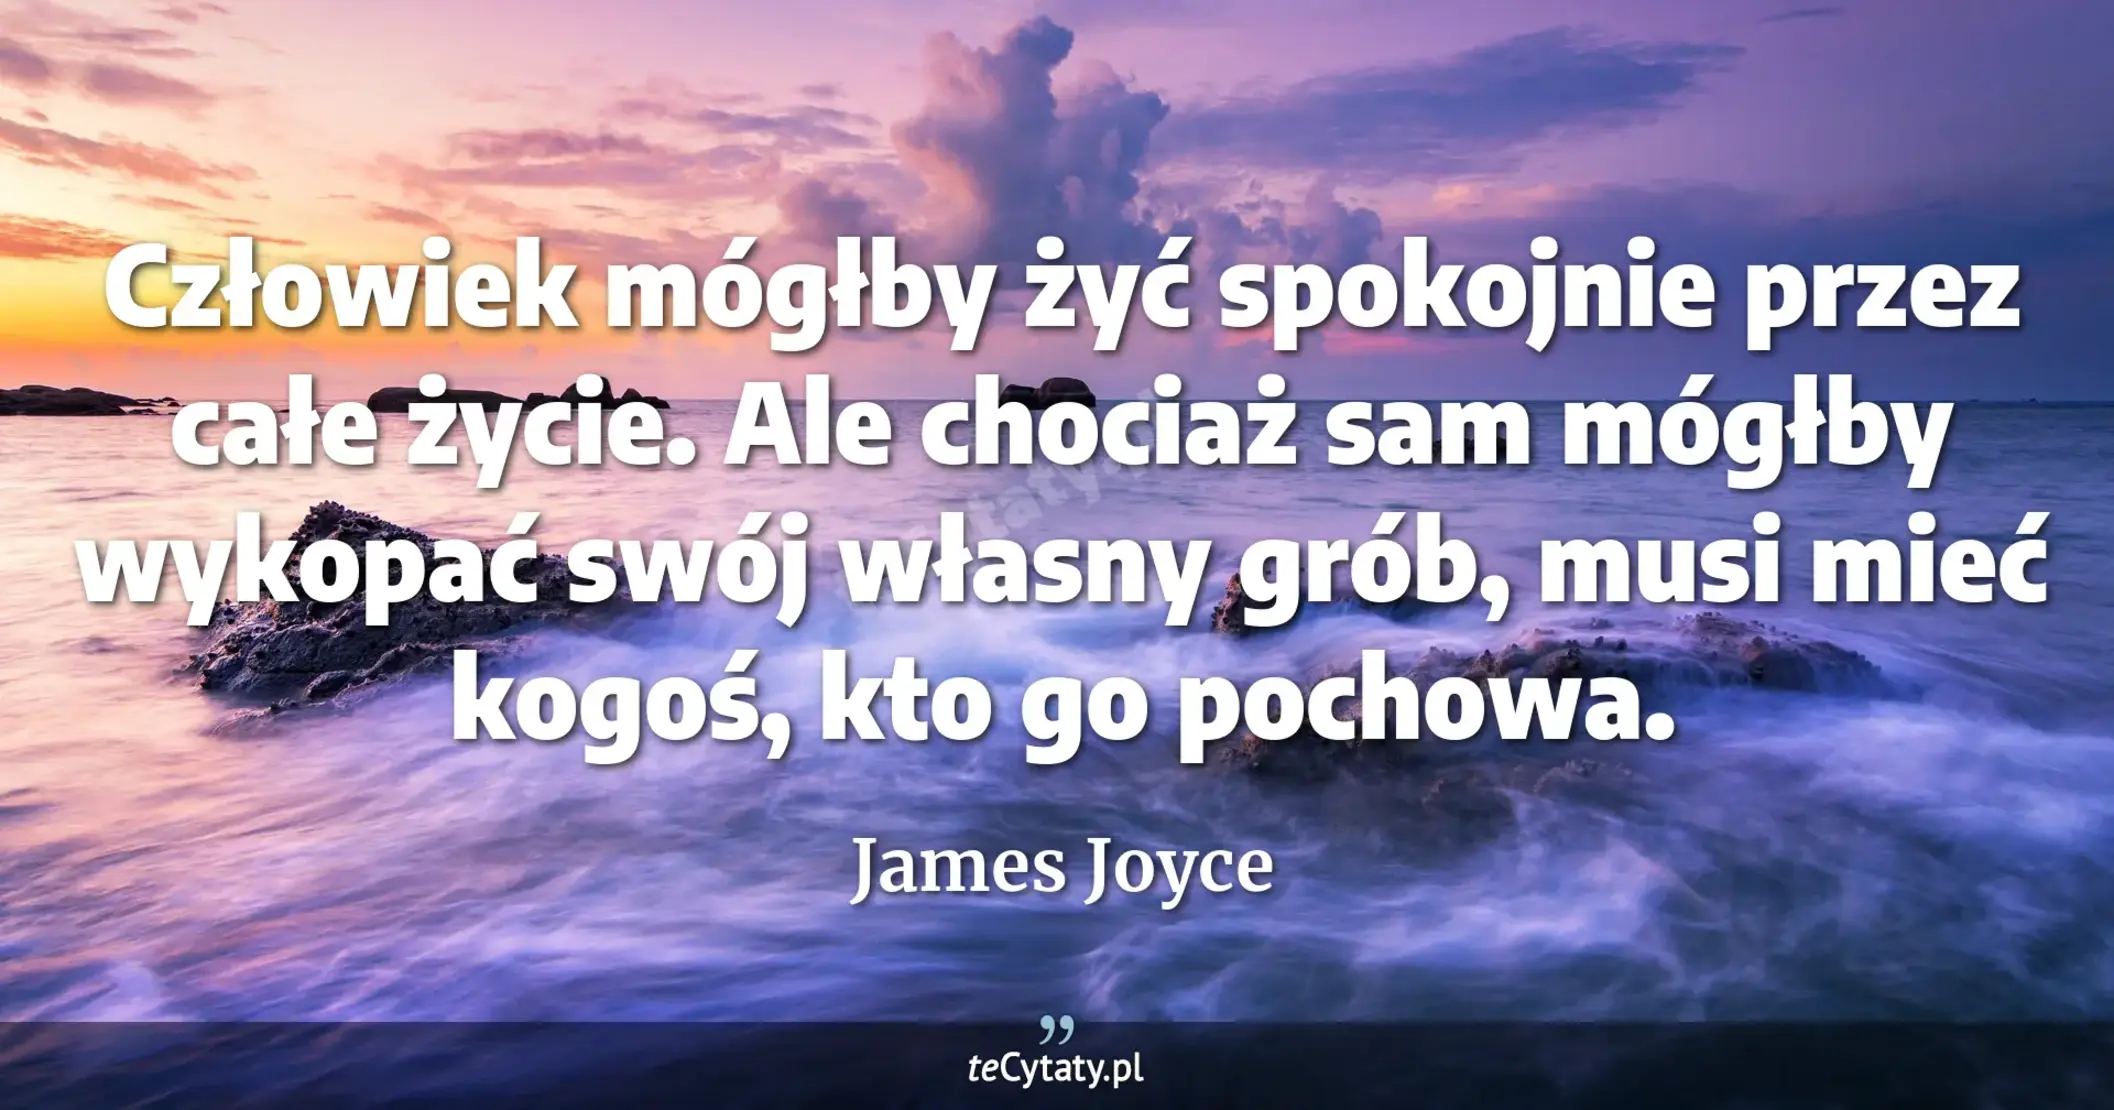 Człowiek mógłby żyć spokojnie przez całe życie. Ale chociaż sam mógłby wykopać swój własny grób, musi mieć kogoś, kto go pochowa. - James Joyce